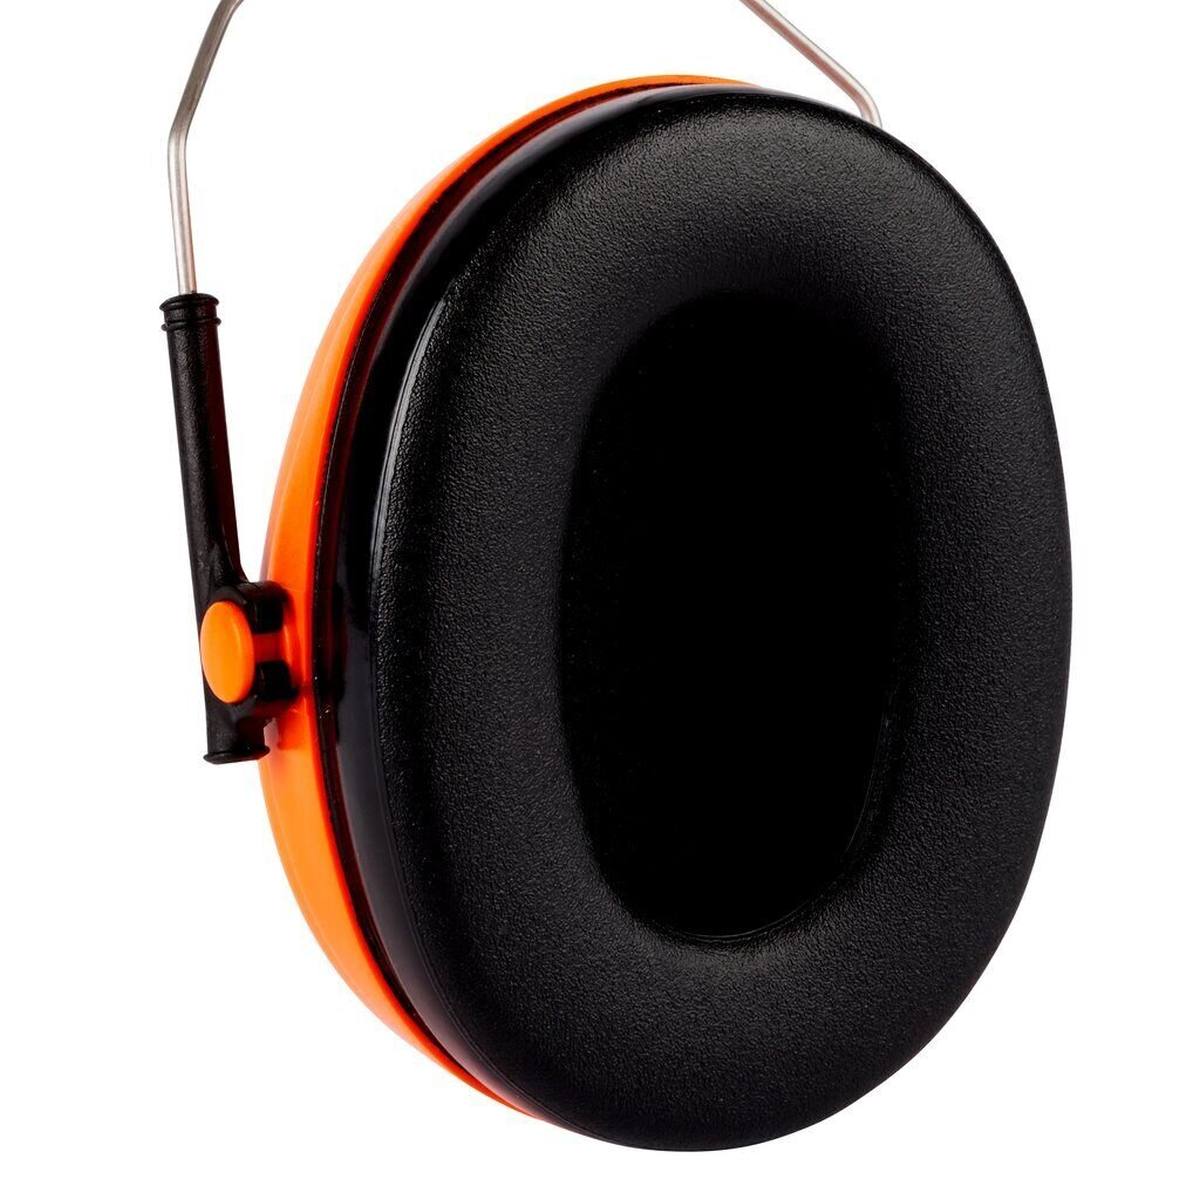  3M G500 Päänsuojainyhdistelmä G500V5CH510-OR Päänpidin - oranssi, sis. kuulosuojaimet H510P3E, SNR=26 dB ja visiiri 5C-1 ruostumatonta terästä